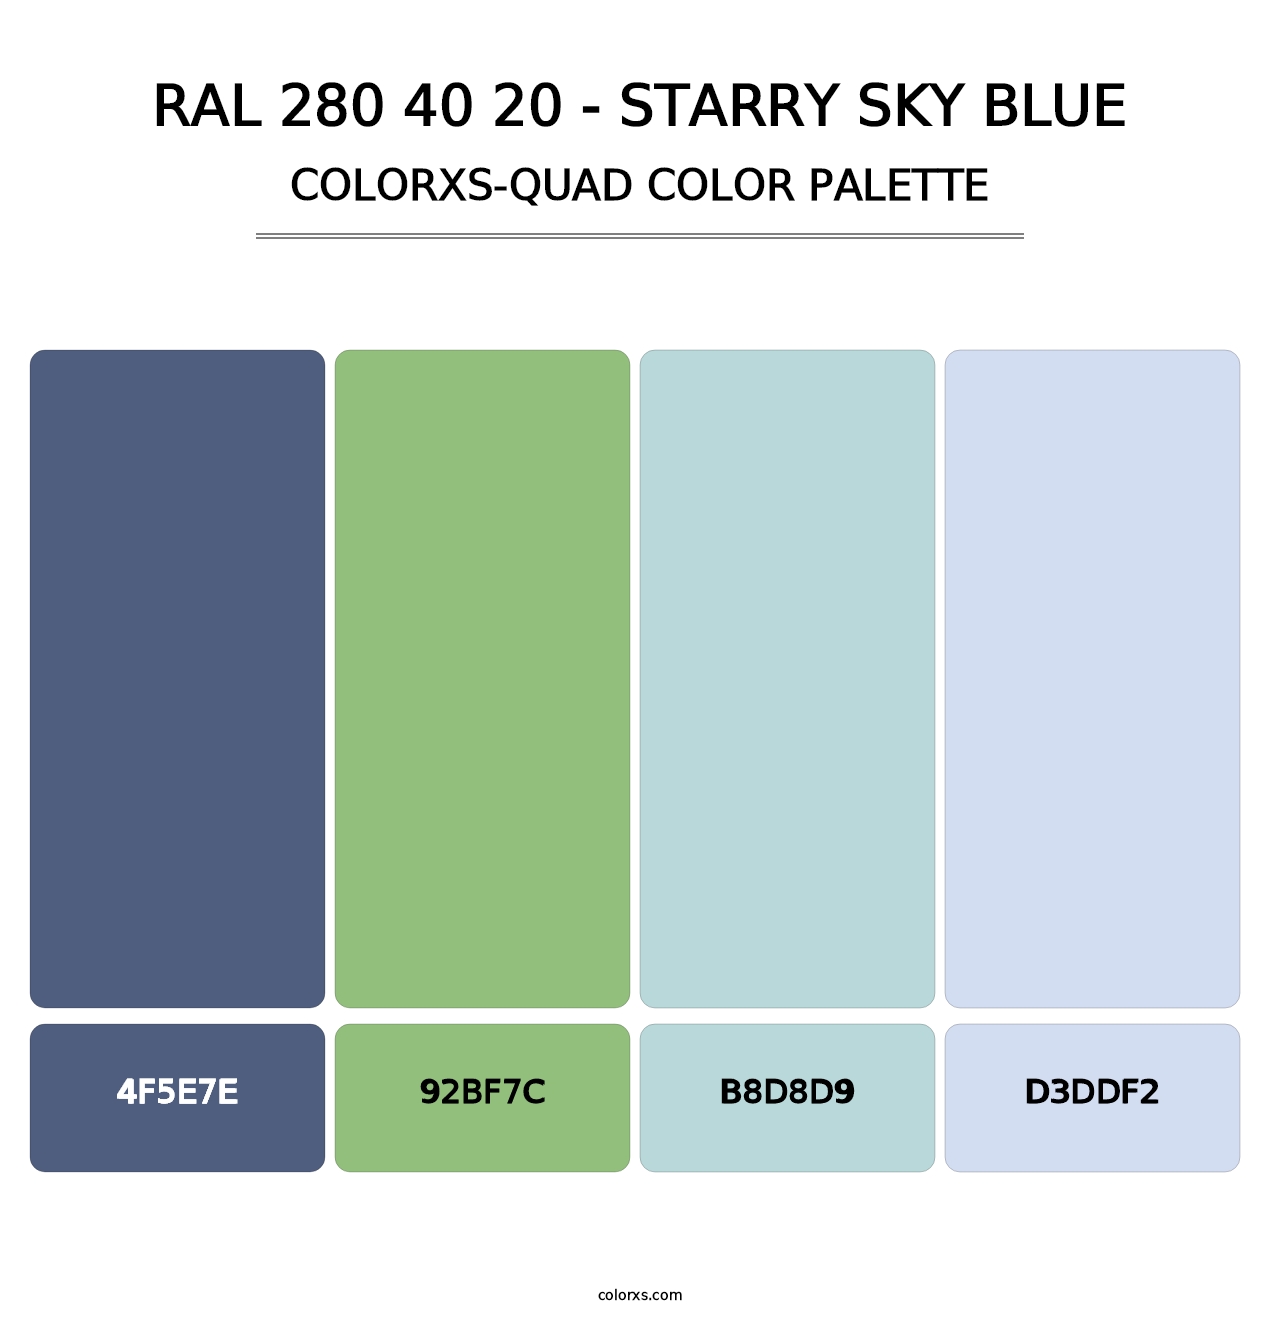 RAL 280 40 20 - Starry Sky Blue - Colorxs Quad Palette